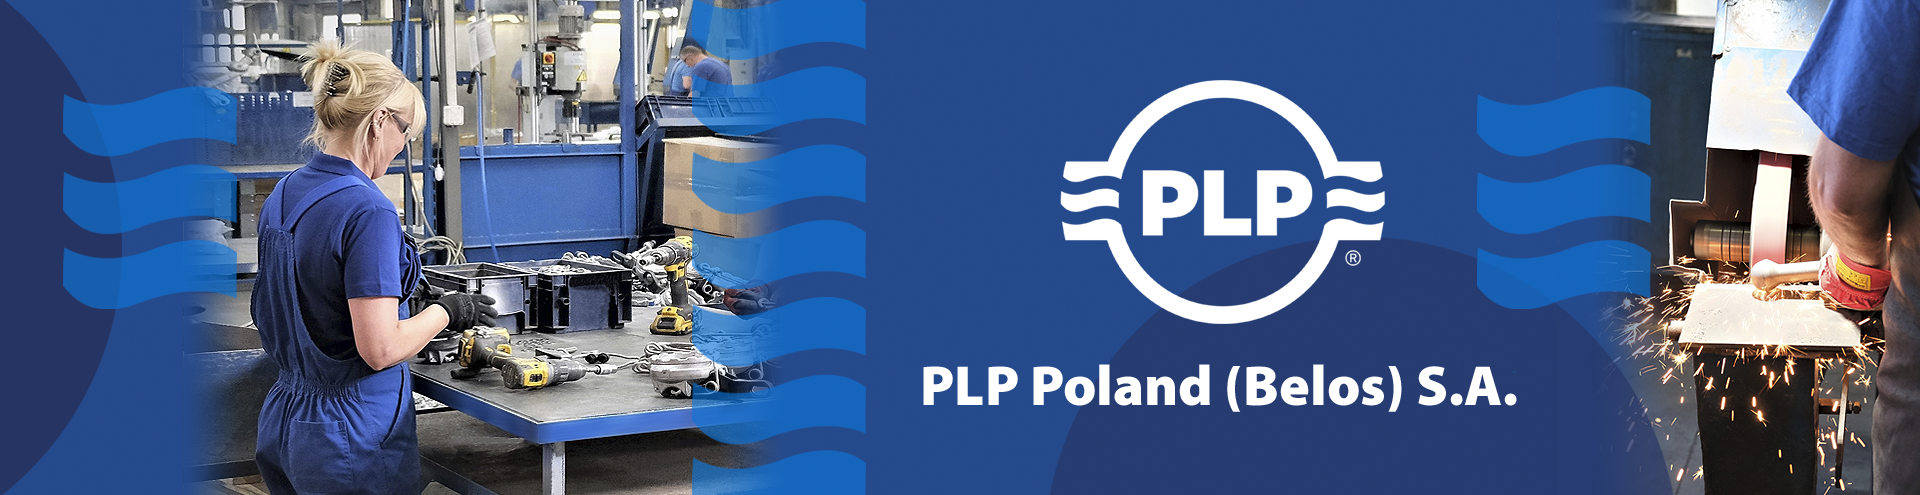 PLP Poland (Belos) S.A.